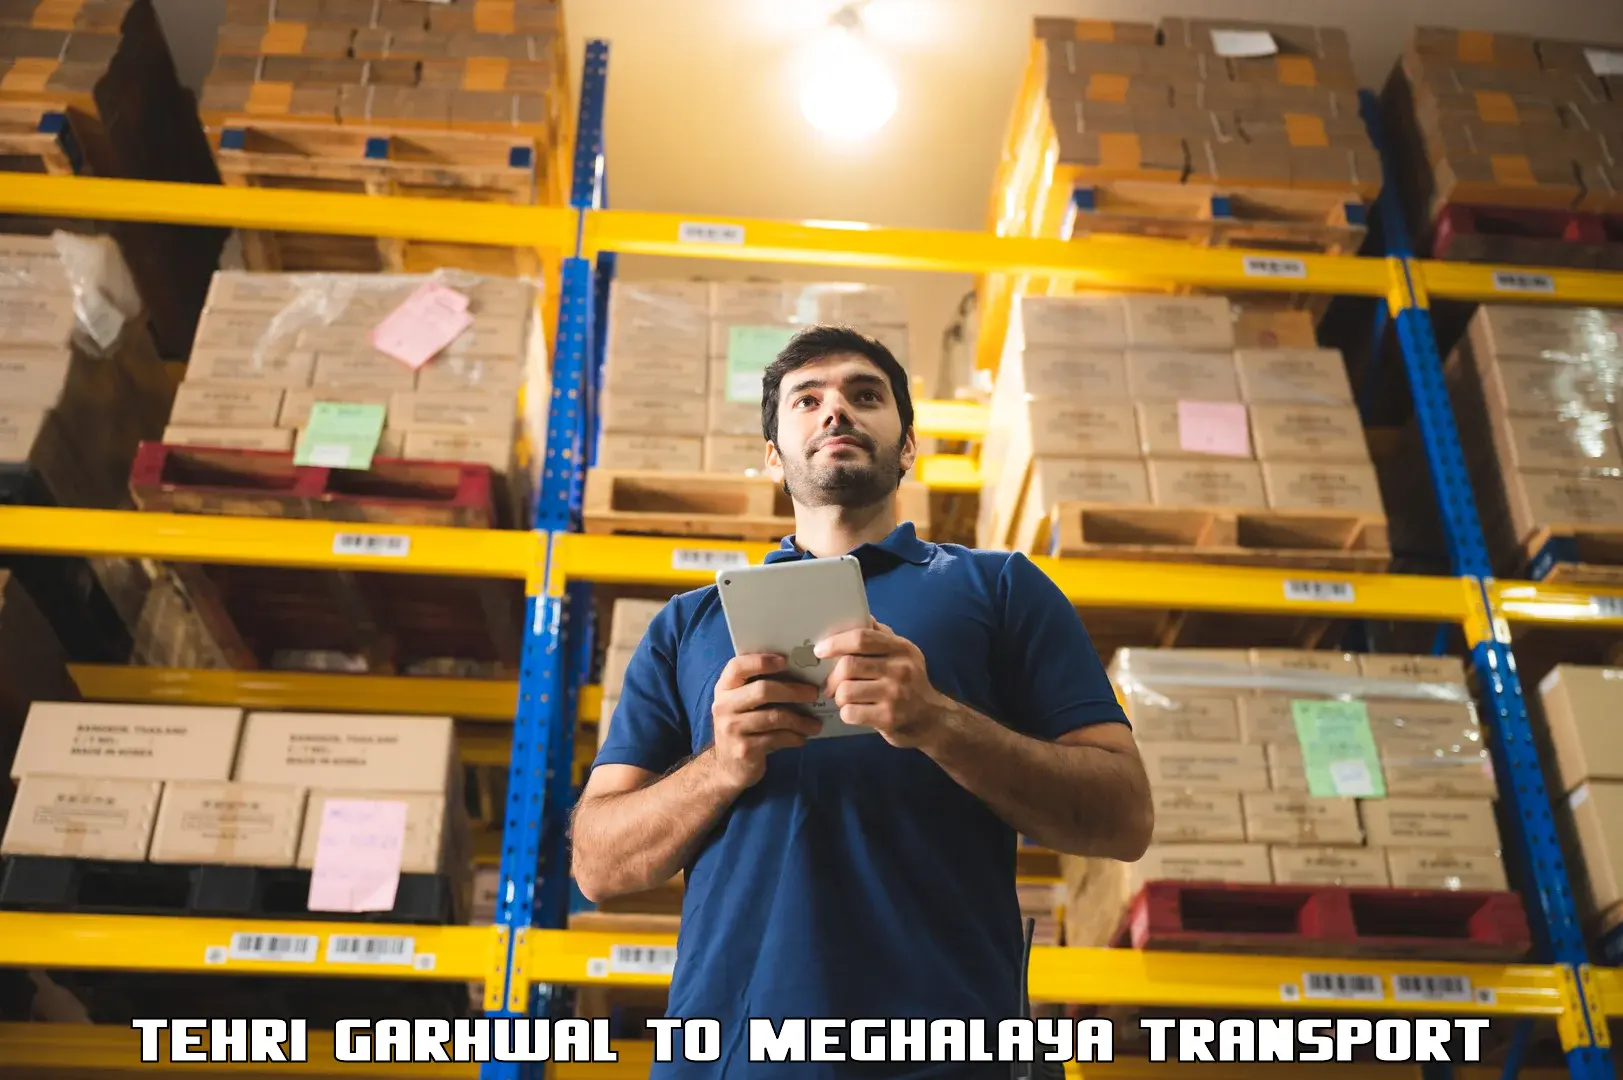 Land transport services Tehri Garhwal to Meghalaya